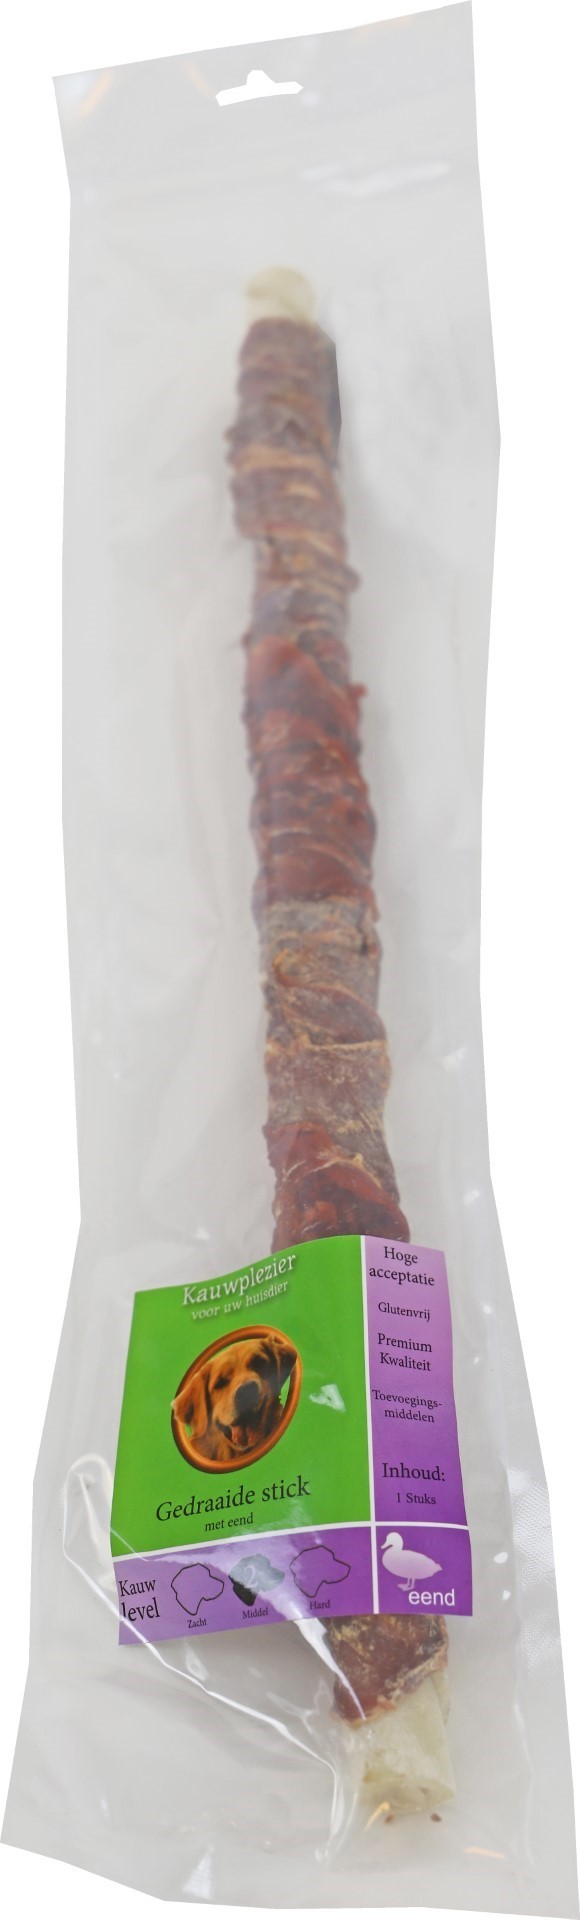 Gebr. De Boon Natuurlijke Hondensnack - Gedraaide Stick met Eend - 40 cm